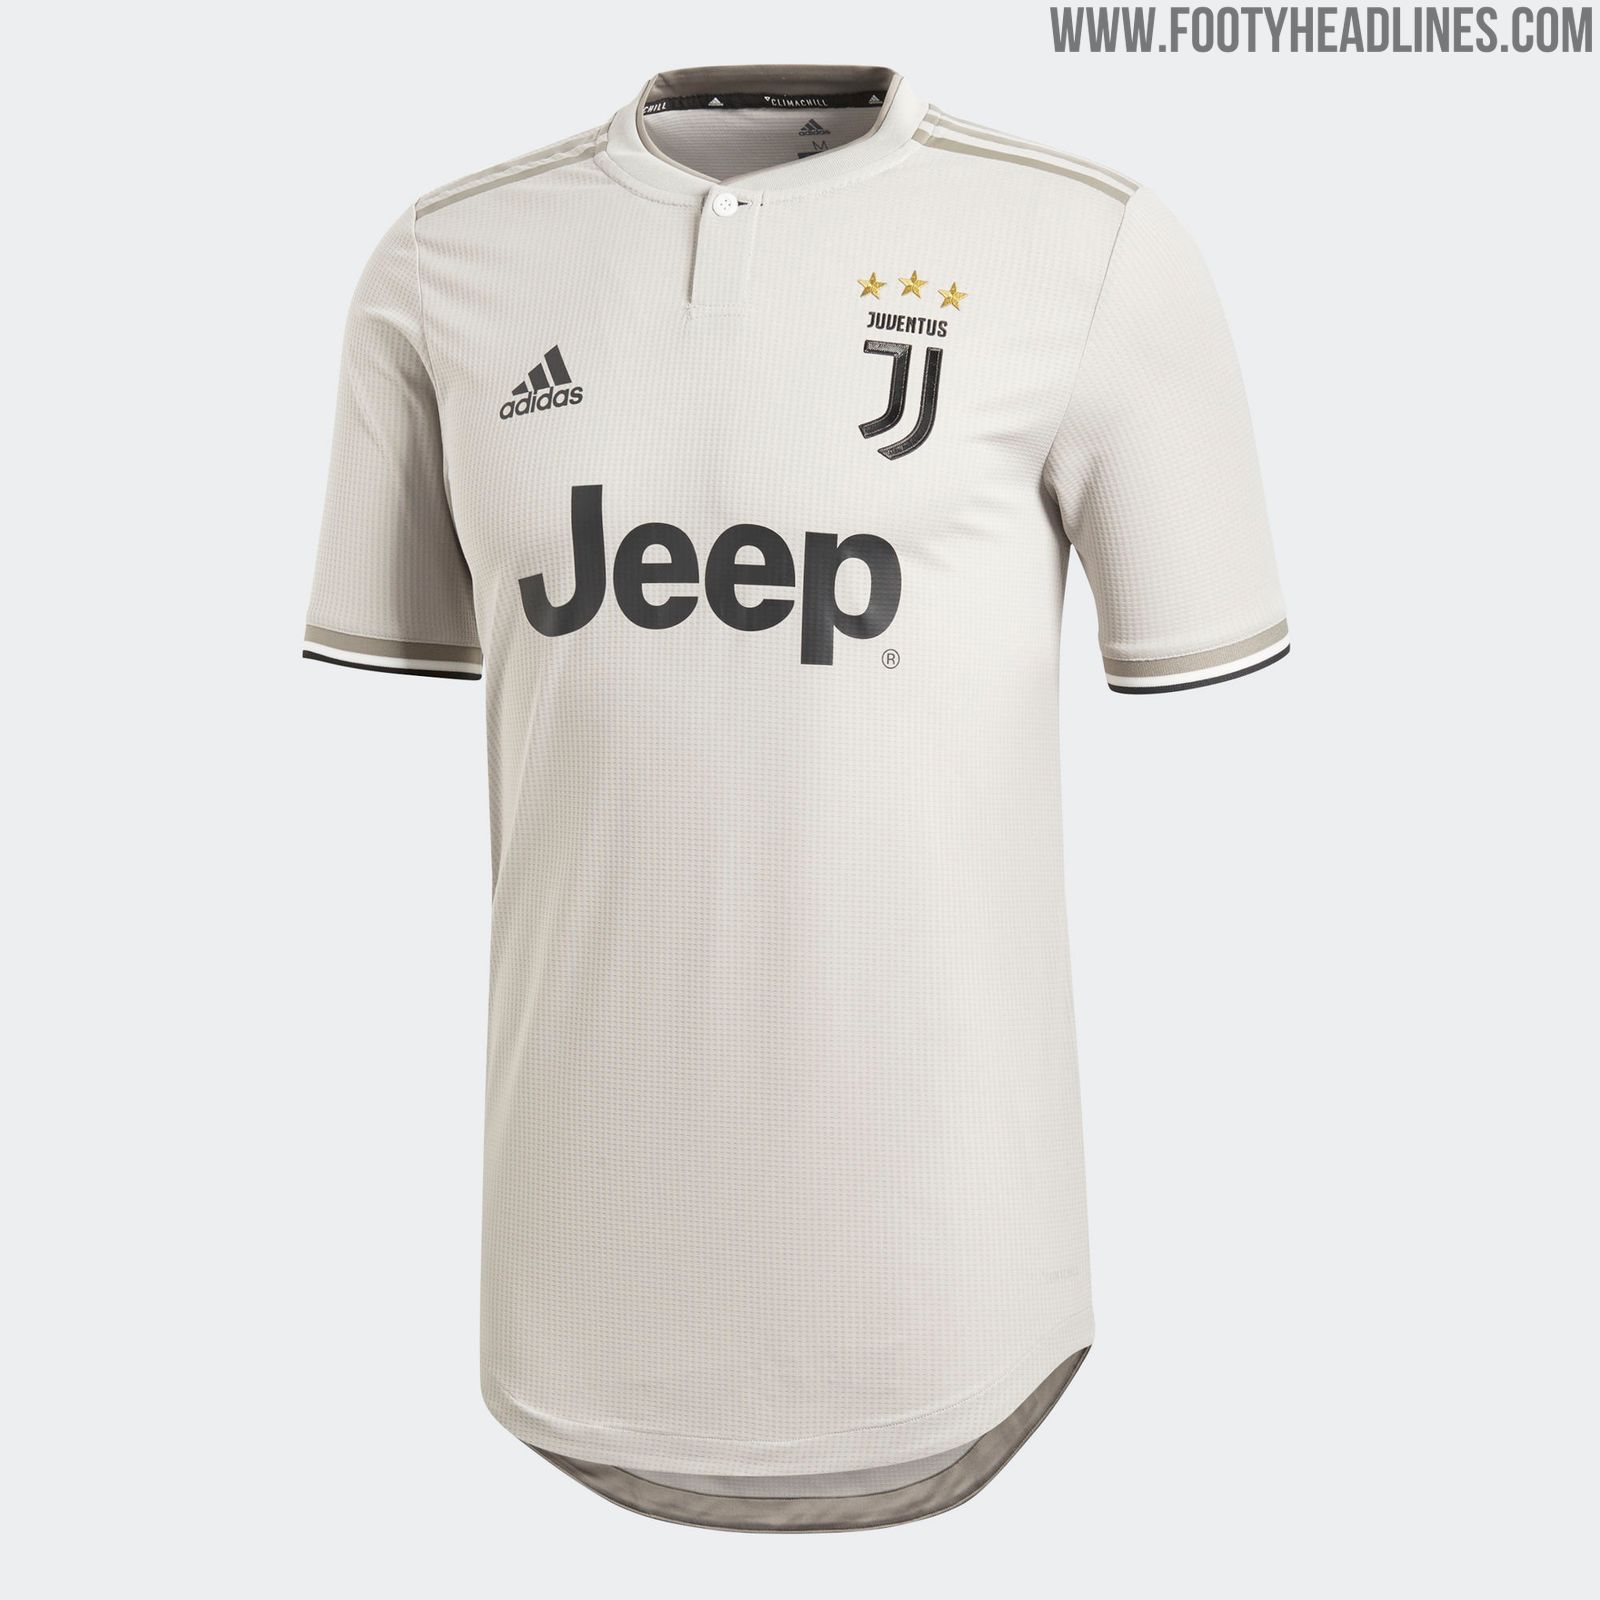 Juventus 18-19 Away Kit Released - Footy Headlines